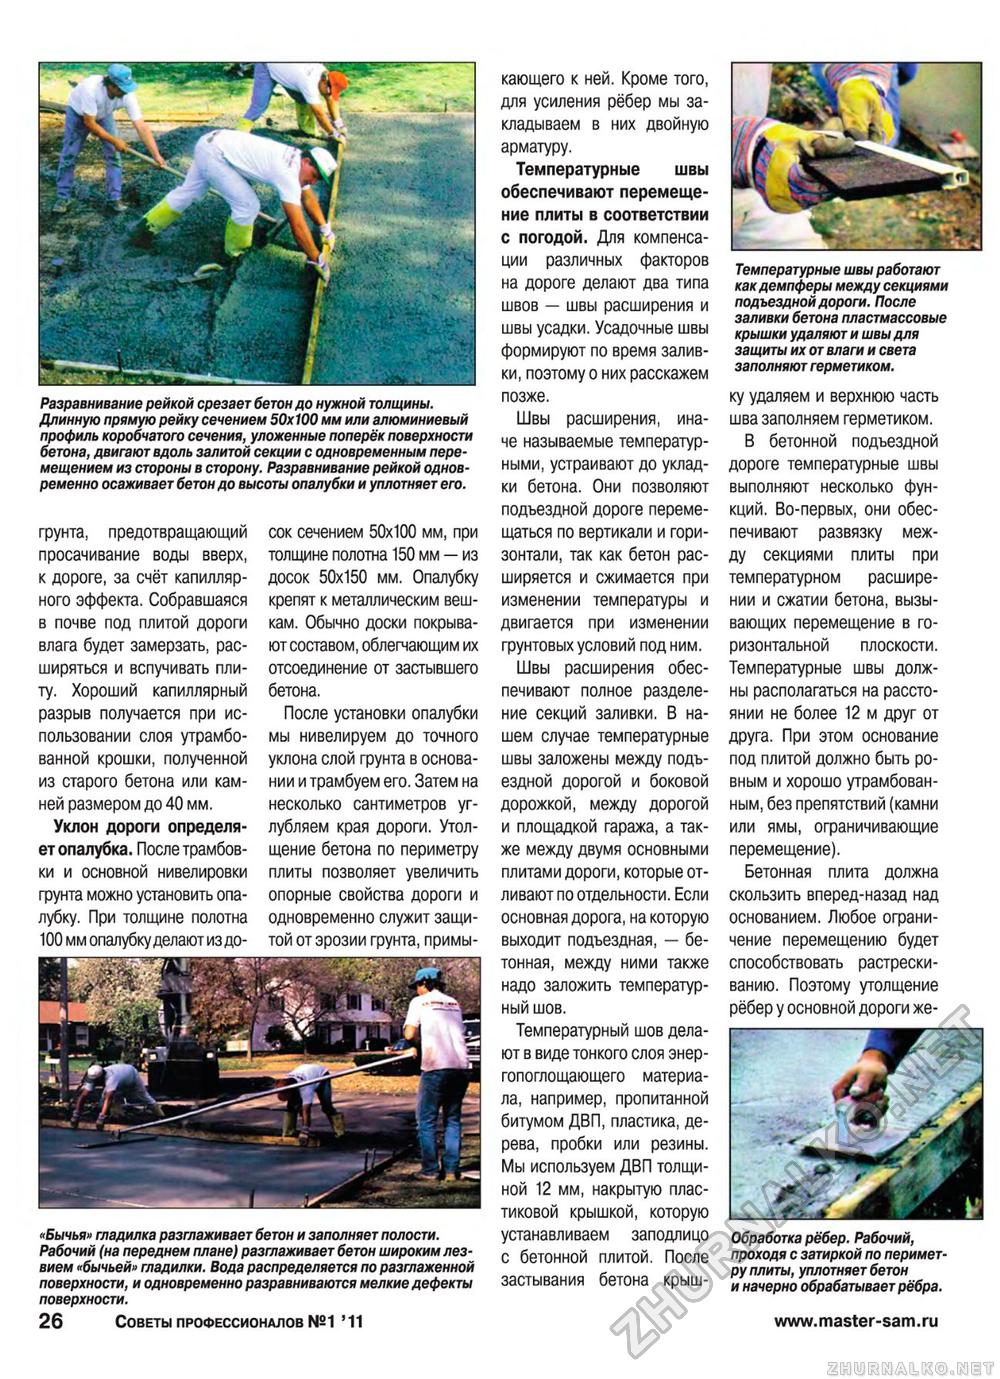 Советы профессионалов 2011-01, страница 26